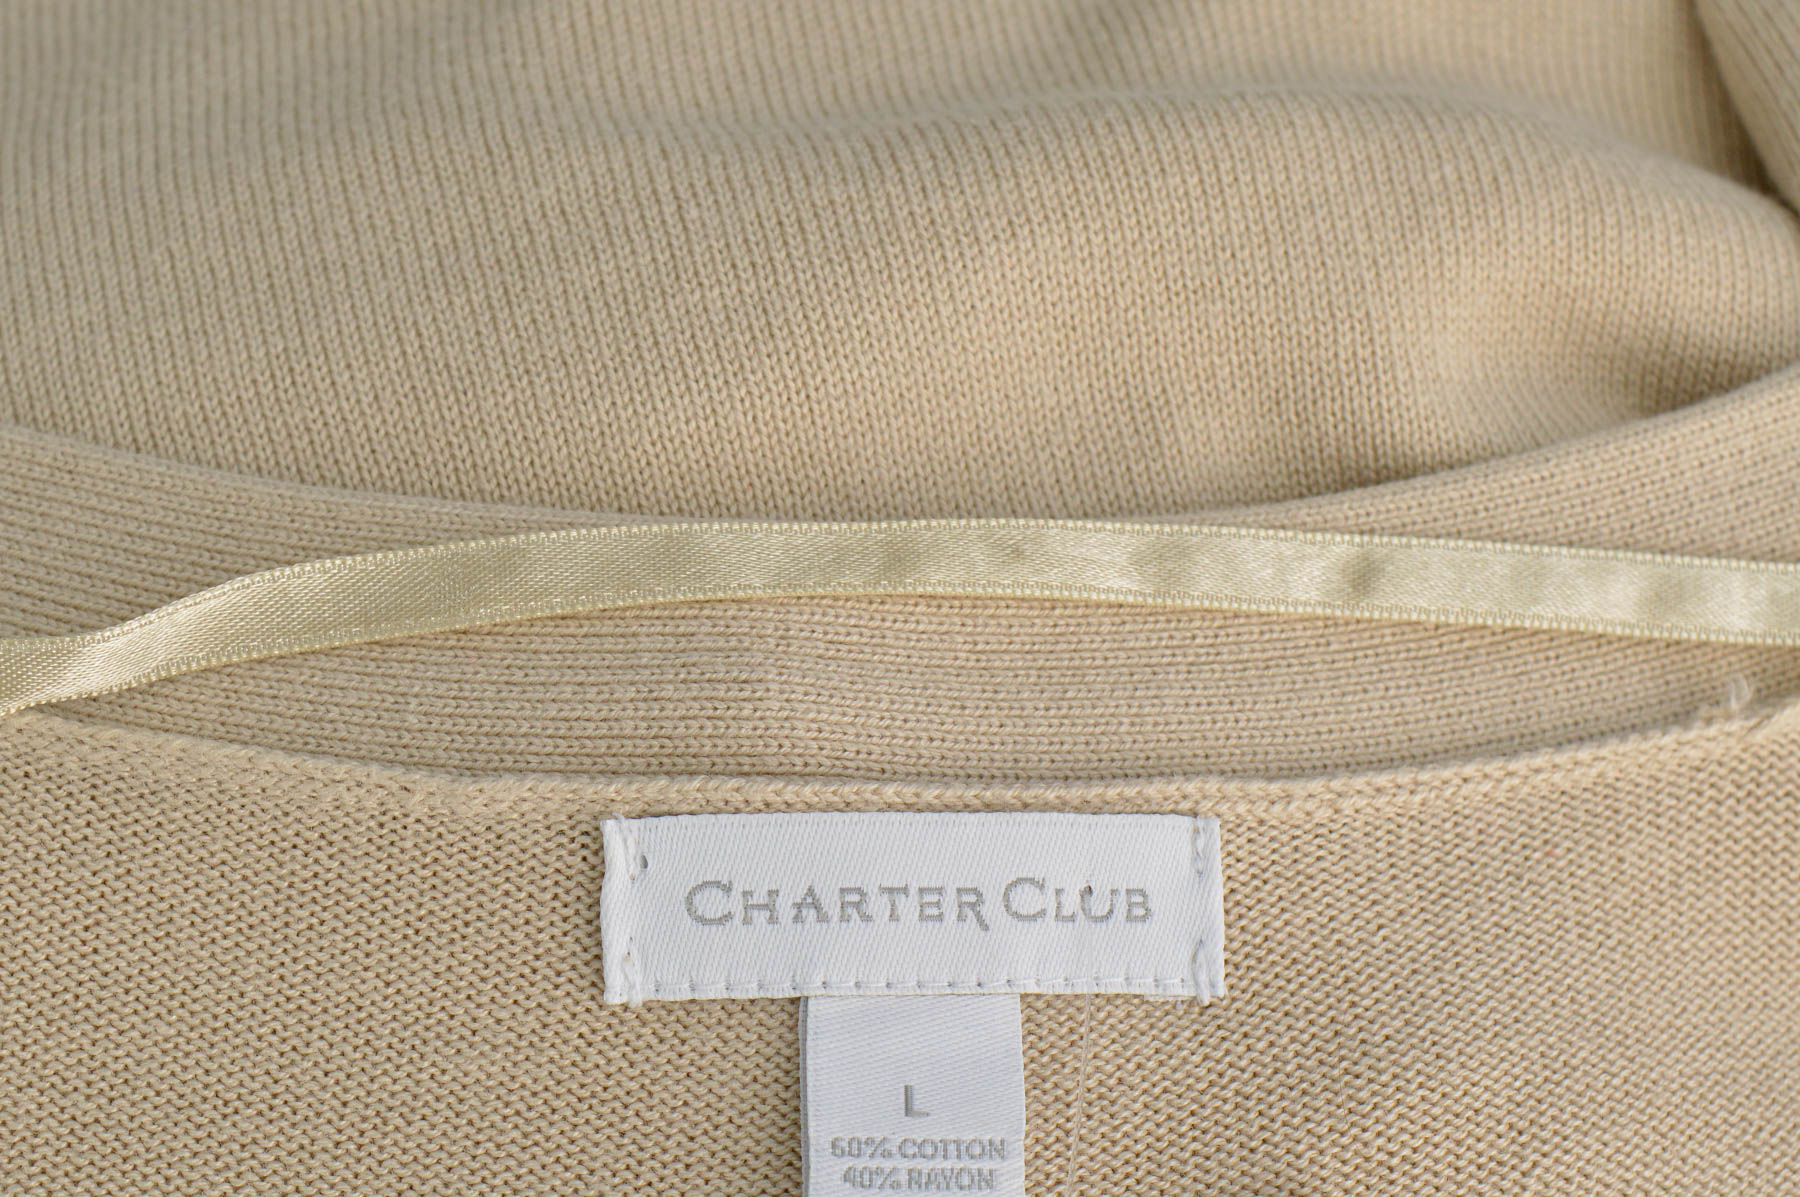 Cardigan / Jachetă de damă - Charter Club - 2